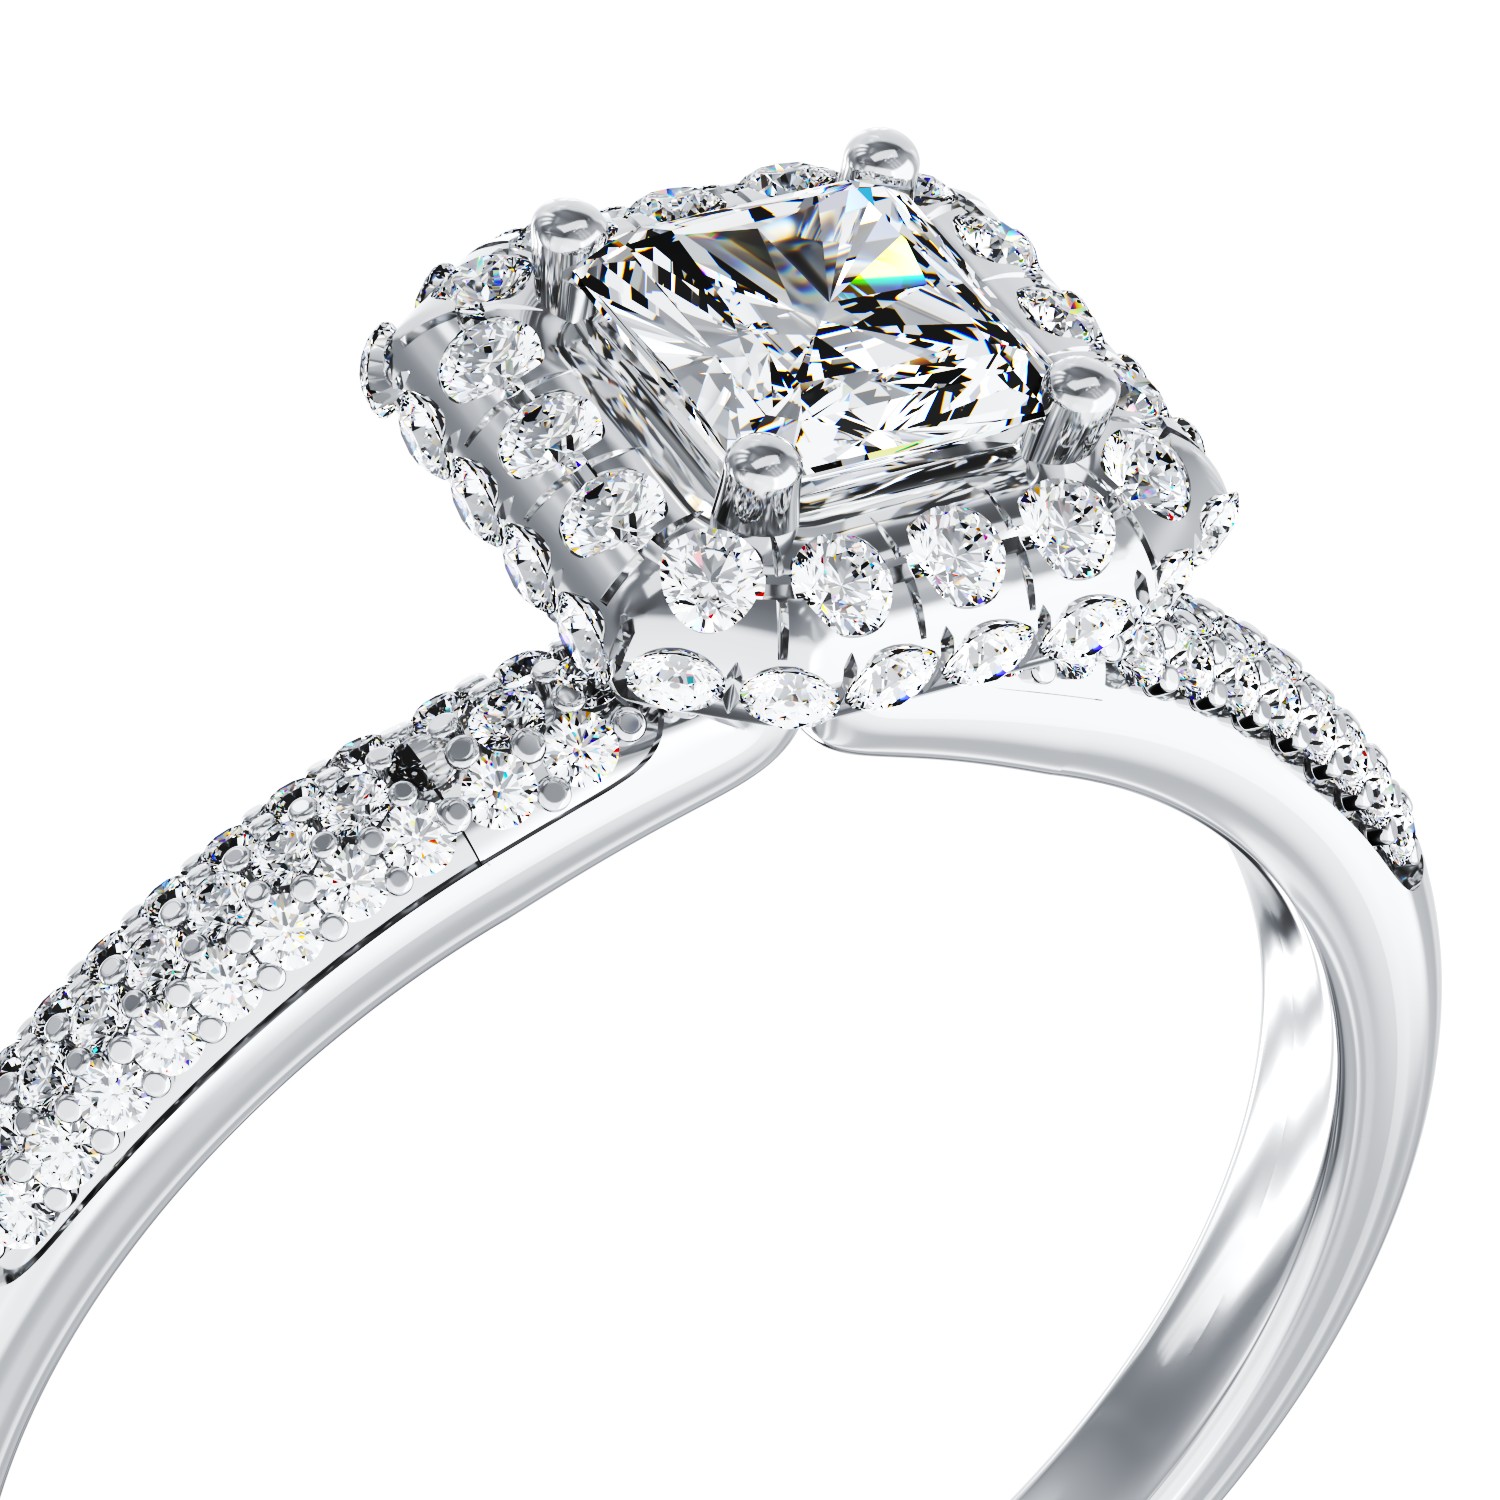 Eljegyzési gyűrű 18K-os fehér aranyból 0,2ct gyémánttal és 0,42ct gyémántokkal. Gramm: 3,28